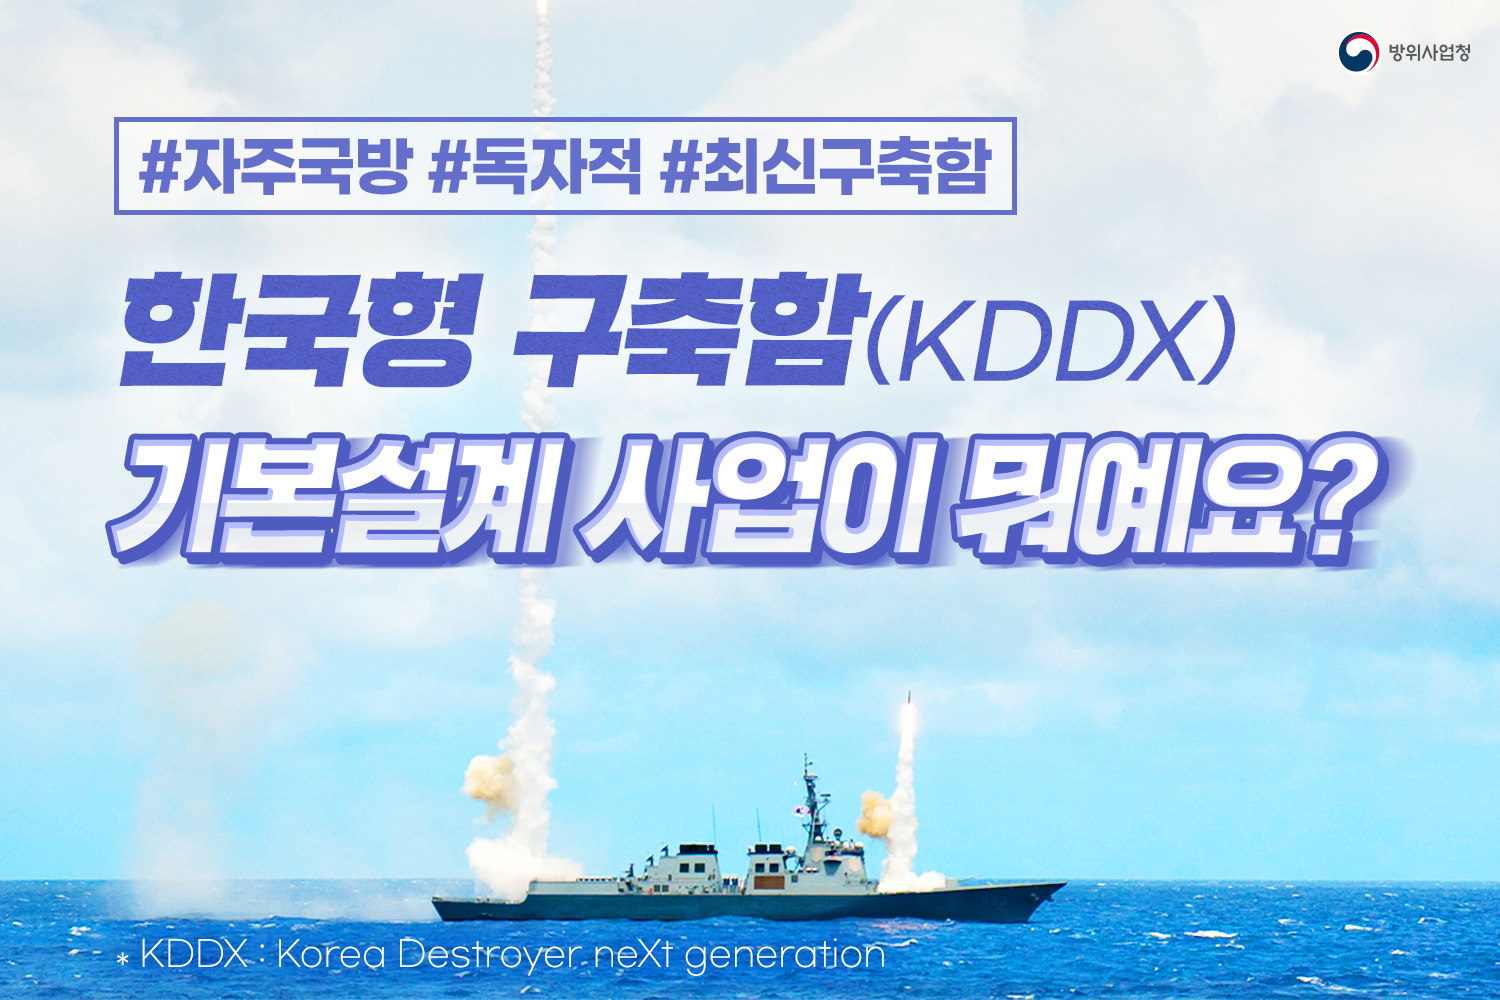 한국형구축함(KDDX)기본설계사업이뭐예요